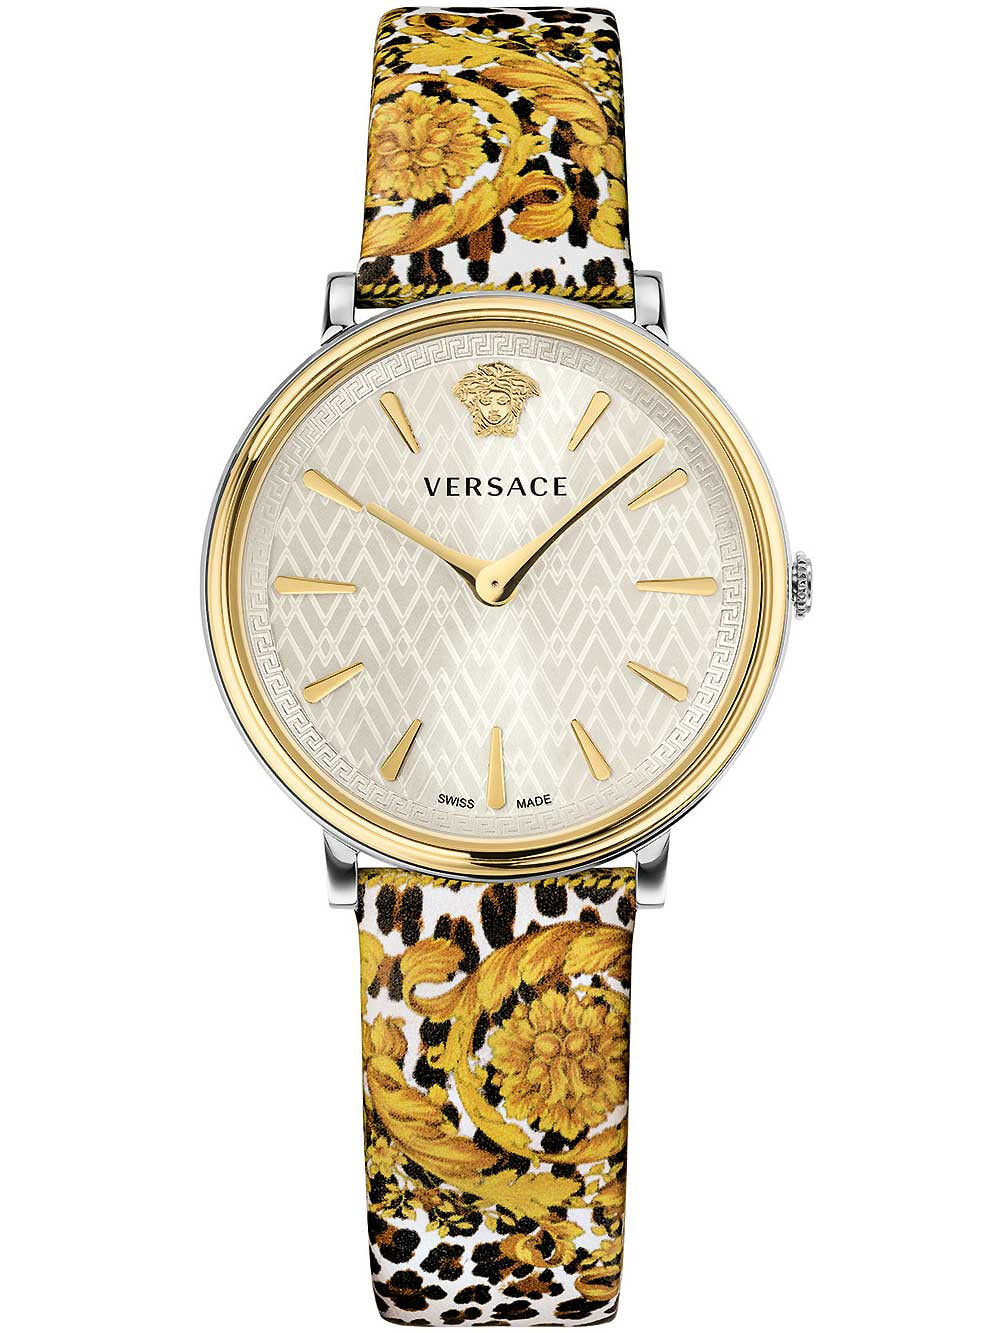 Женские наручные кварцевые часы Versace ремешок из телячьей кожи. Водонепроницаемость составляет 5 АТМ. Защищенное от царапин антибликовое сапфировое стекло.